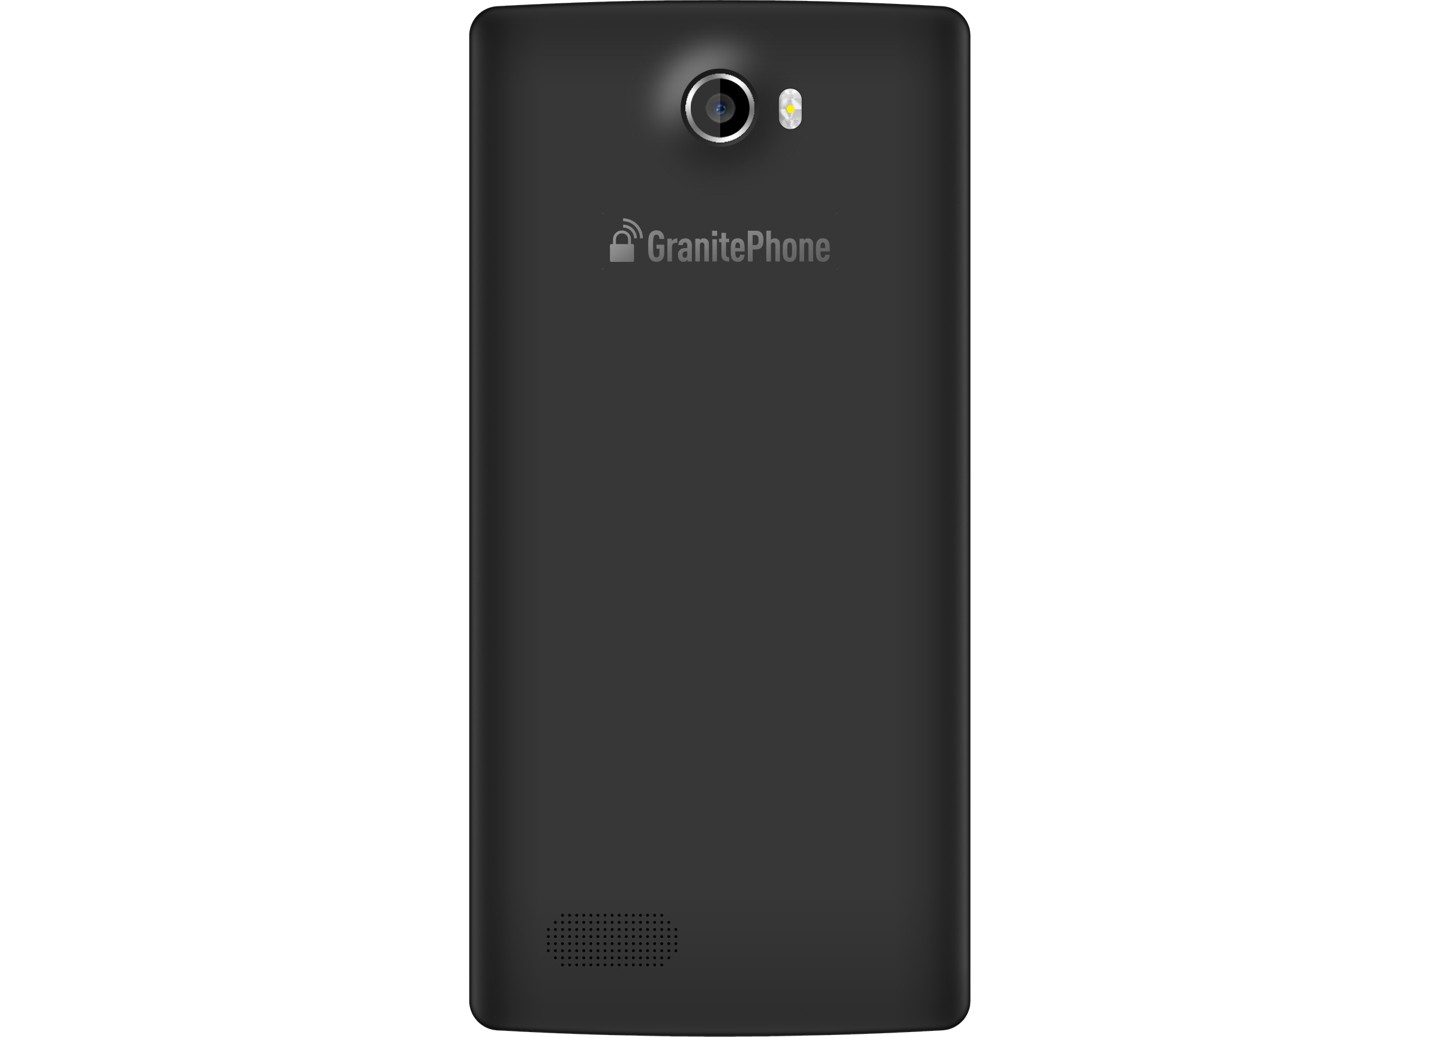 Archos ra mắt GranitePhone siêu bảo mật, giá chát 3